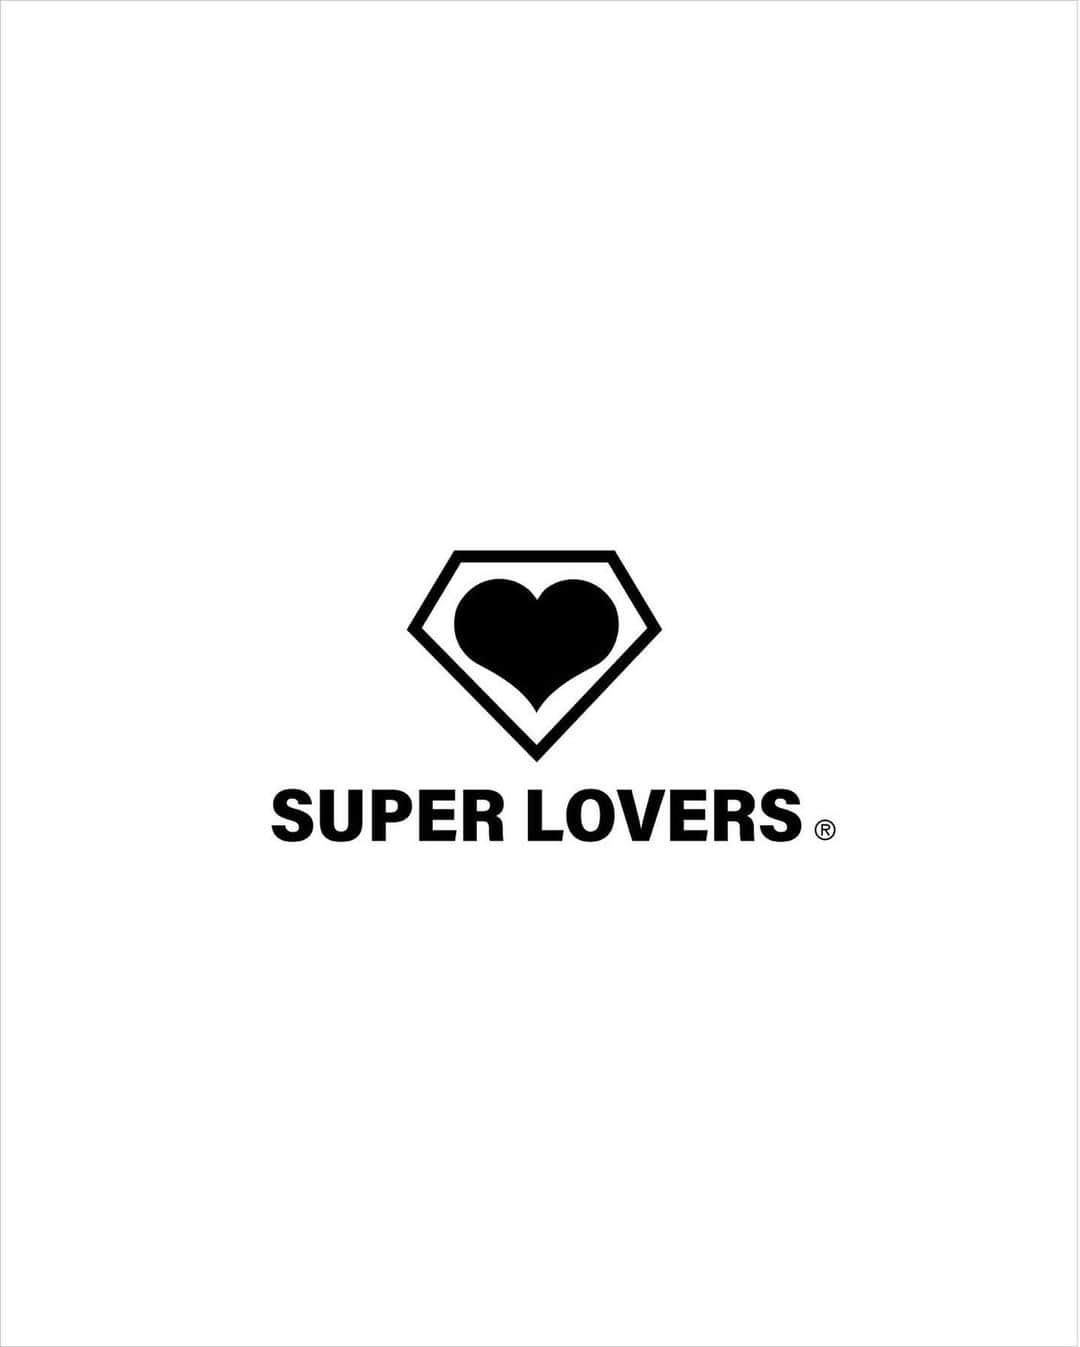 あさちるさんのインスタグラム写真 - (あさちるInstagram)「2023 SUPER LOVERS  Love is the message  1988−2005 Reprinted products are on sale We are working on sustainability We will produce after receiving your order.  It takes around 7−10days to ship.  From Tokyo with love Yasuharu Tanaka /Made for all  Love is the message. SUPER LOVERS  co,ltd  https://superlovers.paintory.com/ photos @asachill  復刻プリント商品販売中です。  ご注文をいただいた後に生産いたしますので 商品発送までに7日前後お日にちいただきます。 株式会社スーパーラヴァーズ」3月20日 16時45分 - asachill